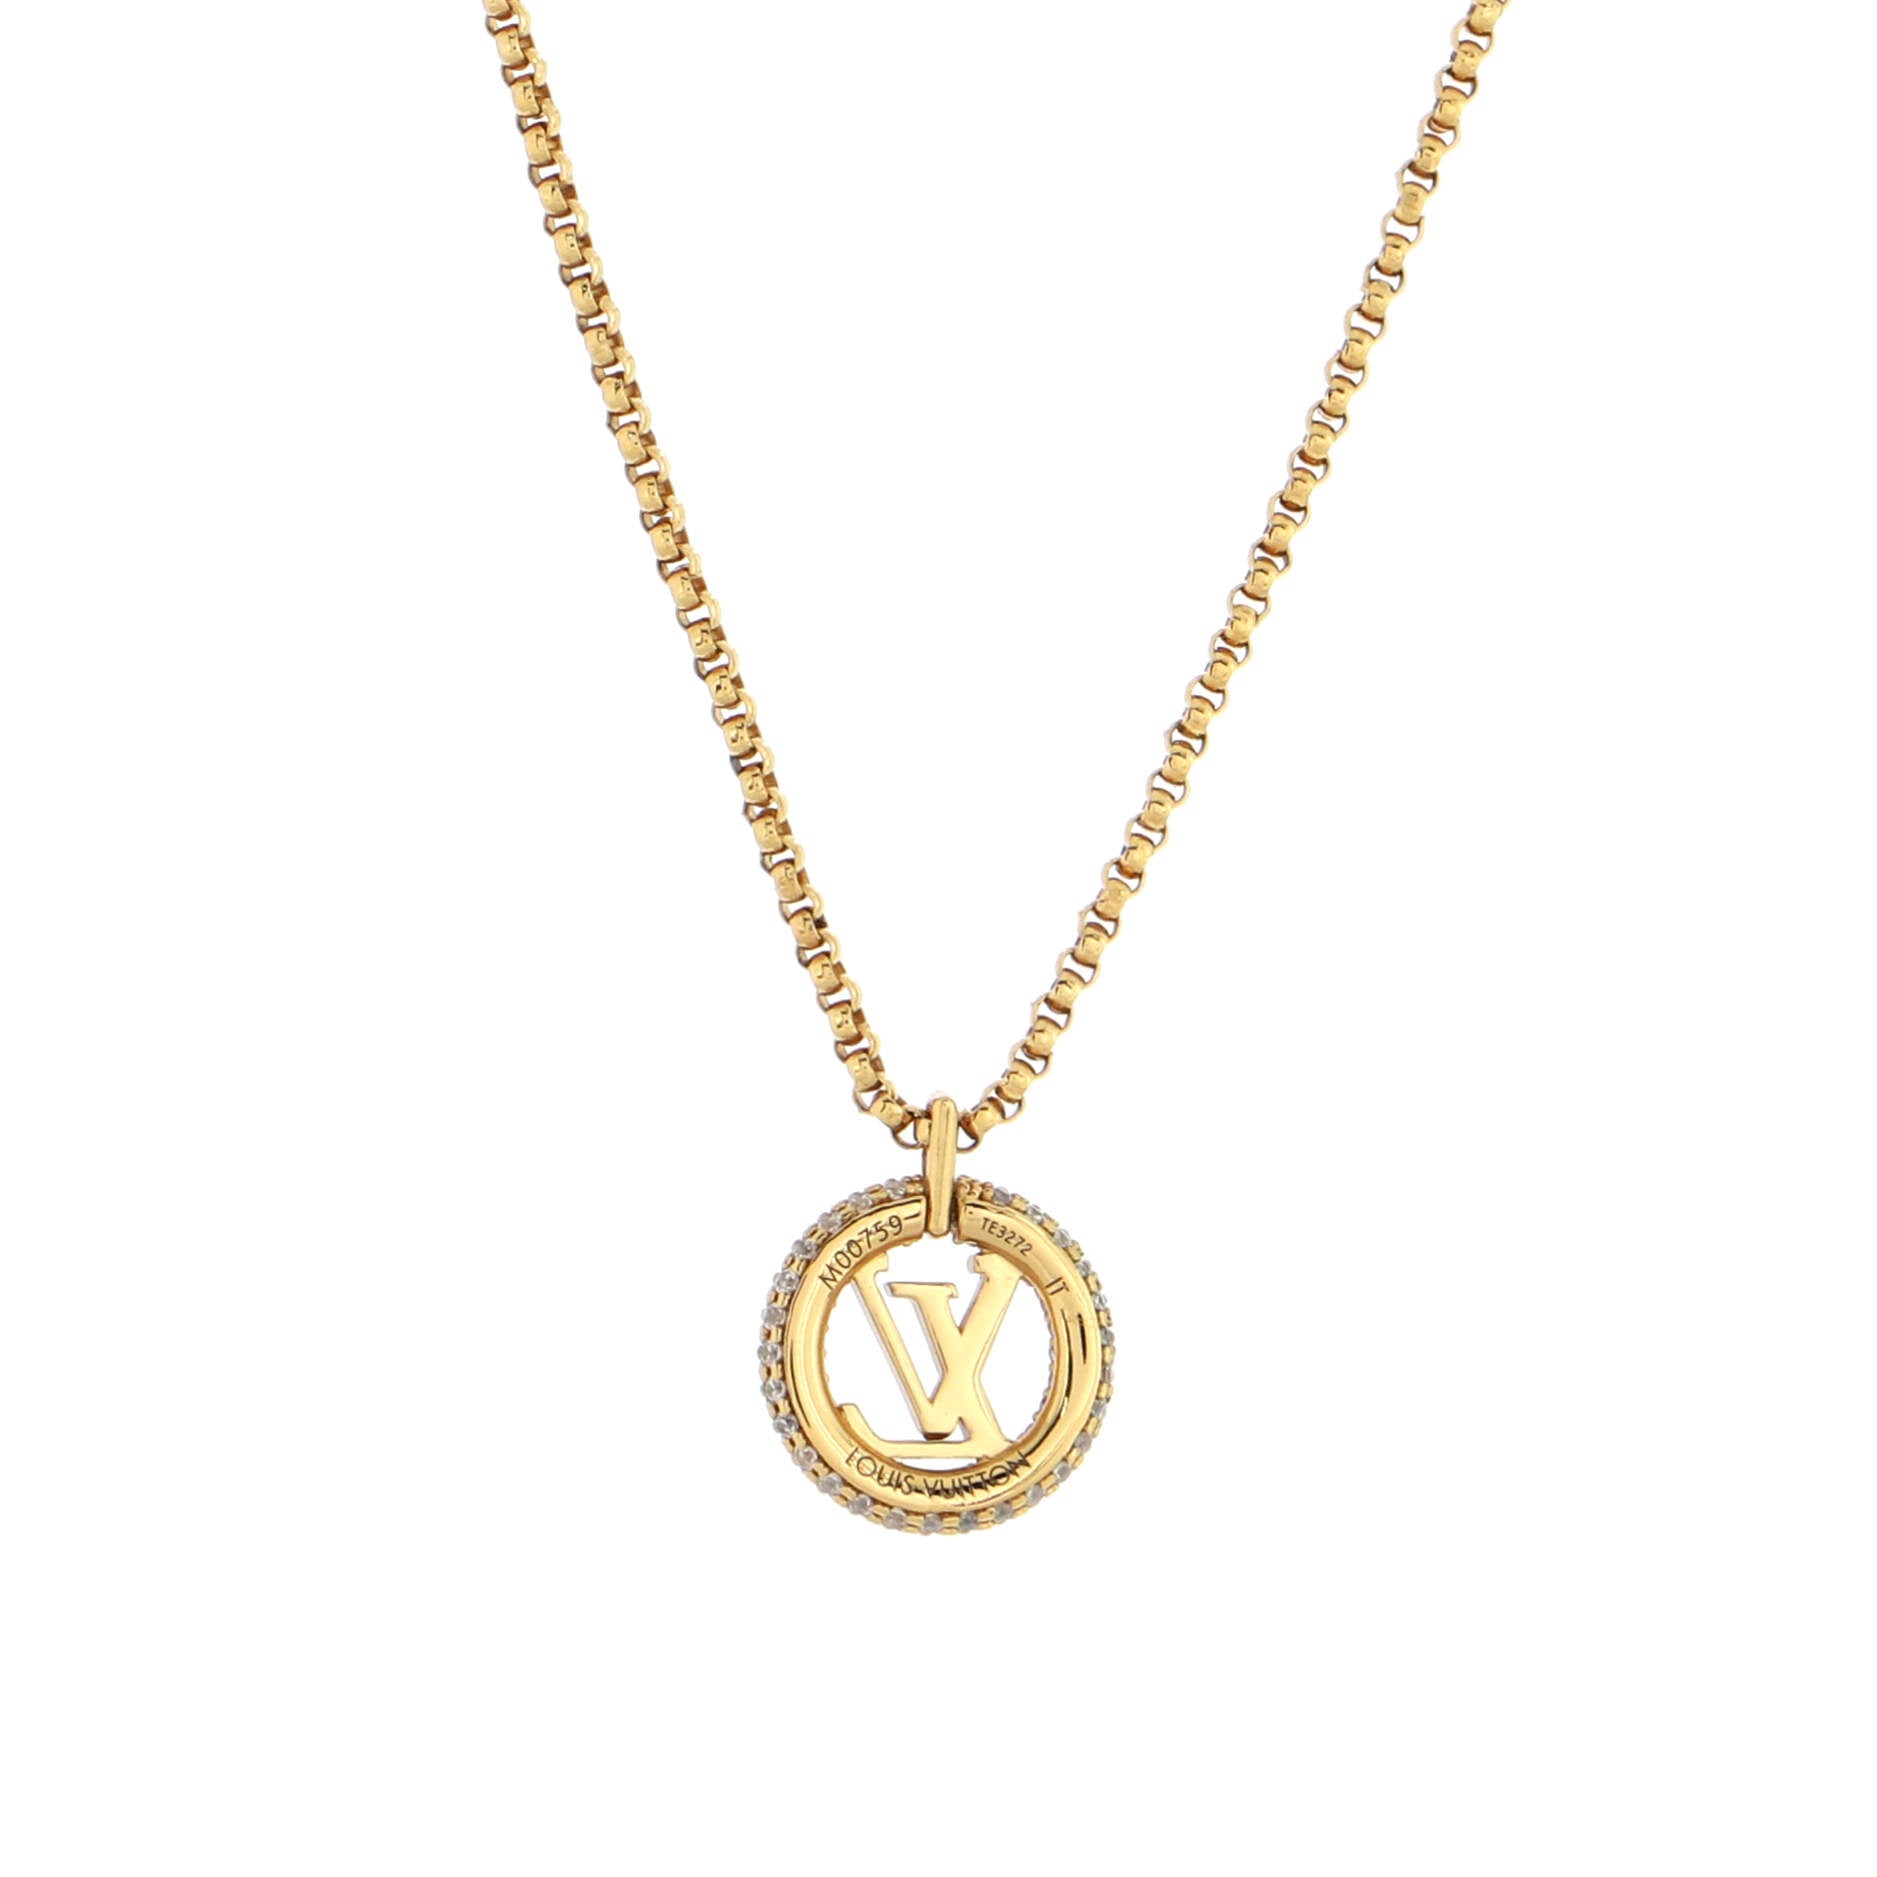 Louis Vuitton Louisette Pendant Necklace - Gold-Plated Pendant Necklace,  Necklaces - LOU723493